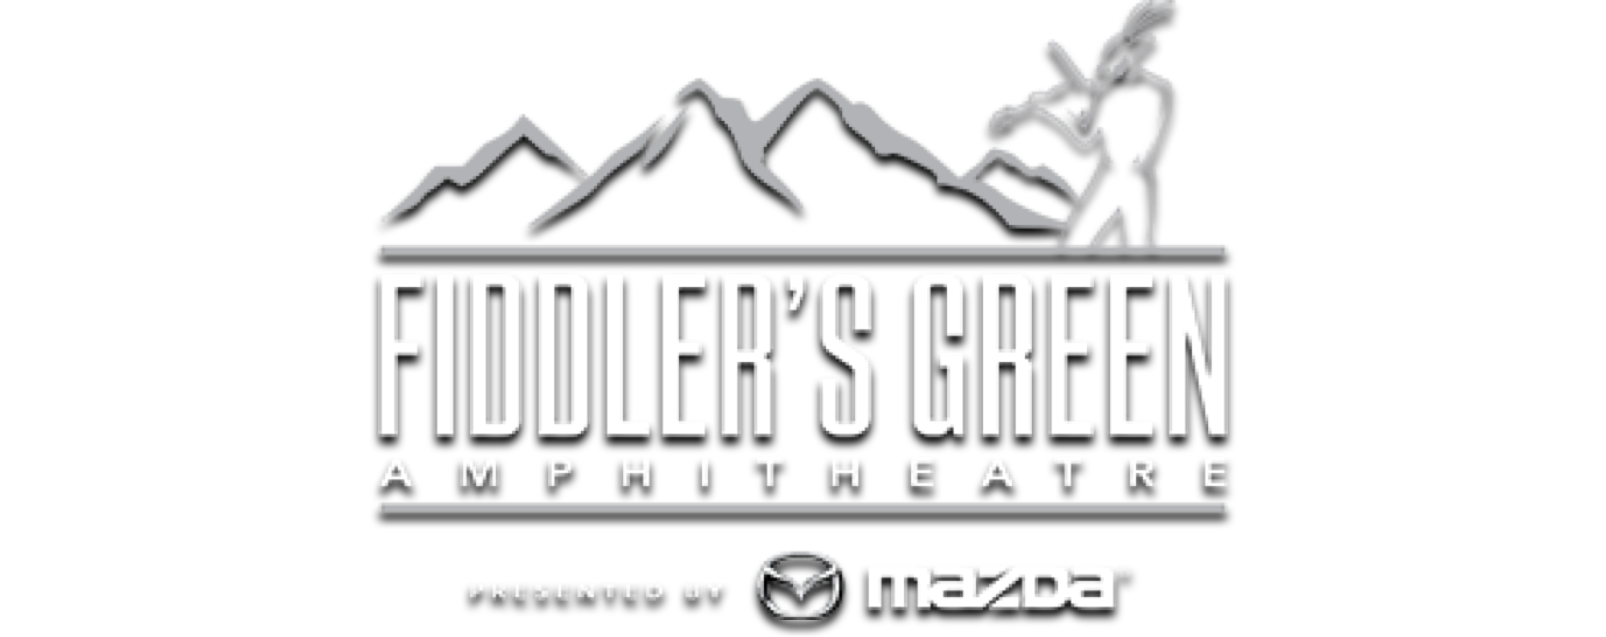 Fiddler's Green Amphitheatre